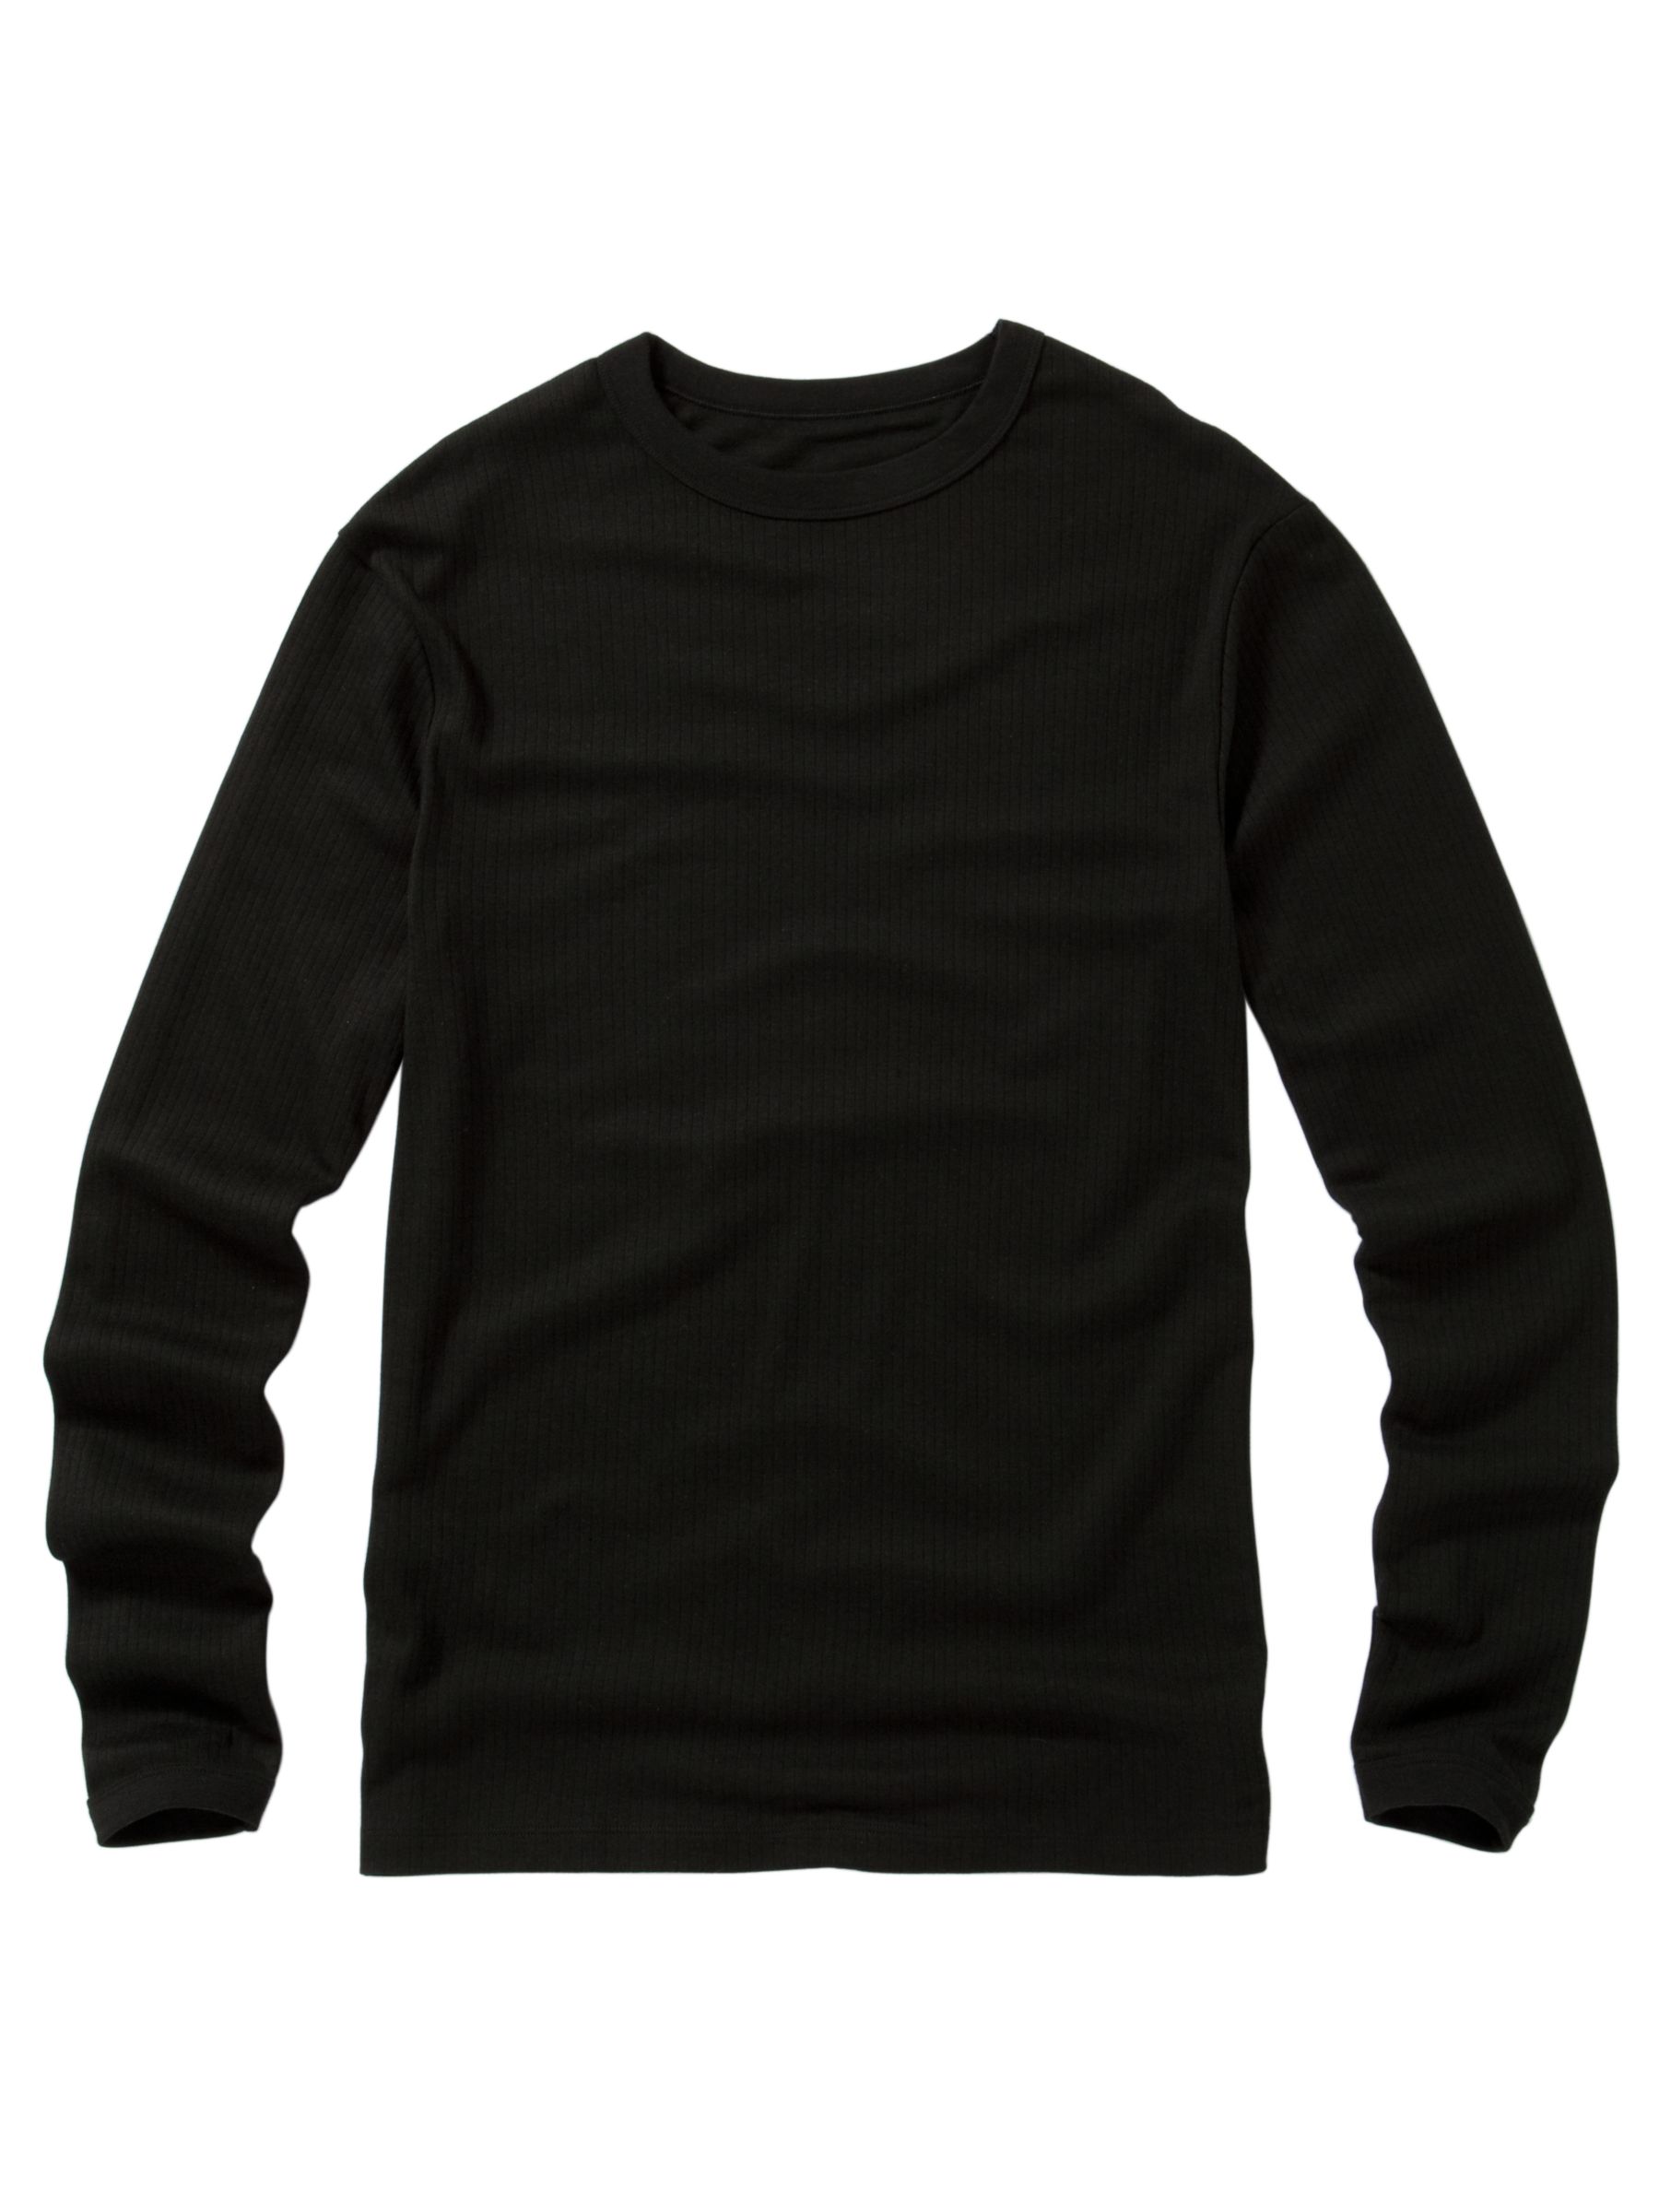 John Lewis Men Thermal Long Sleeve T-Shirt, Black